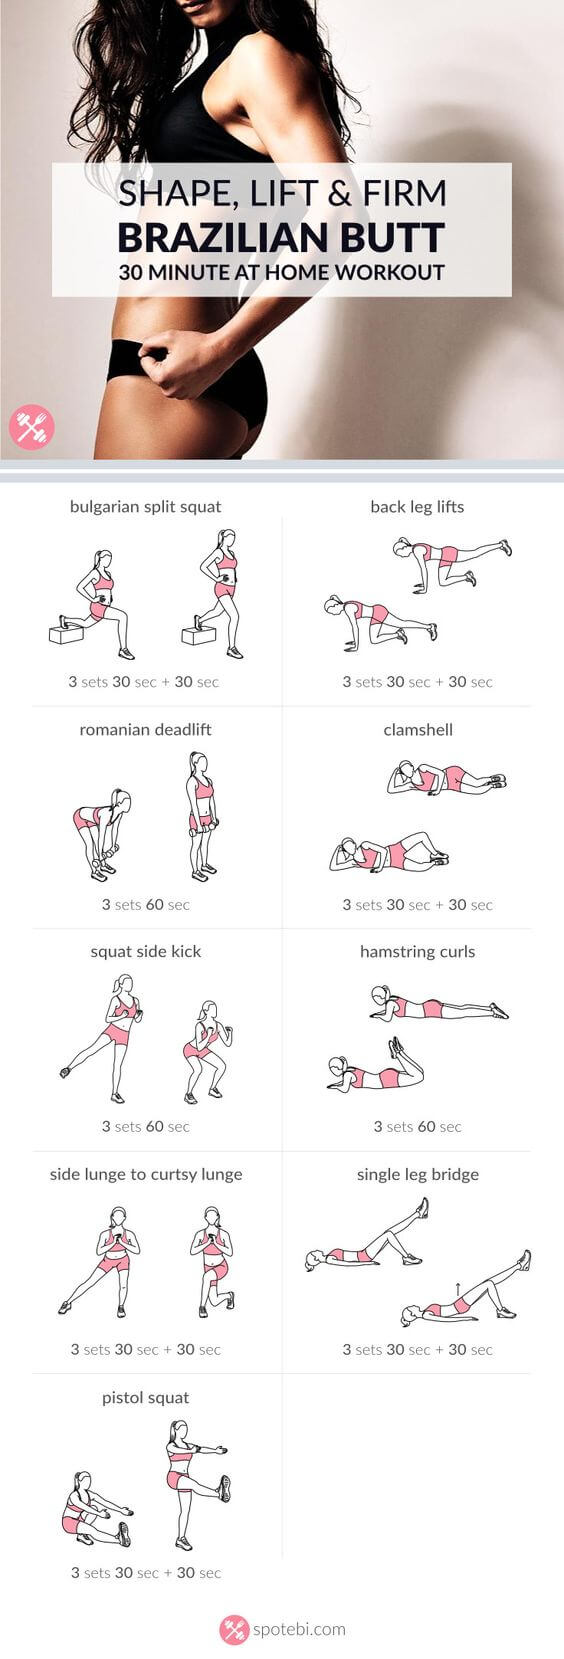 Brazilian butt workout